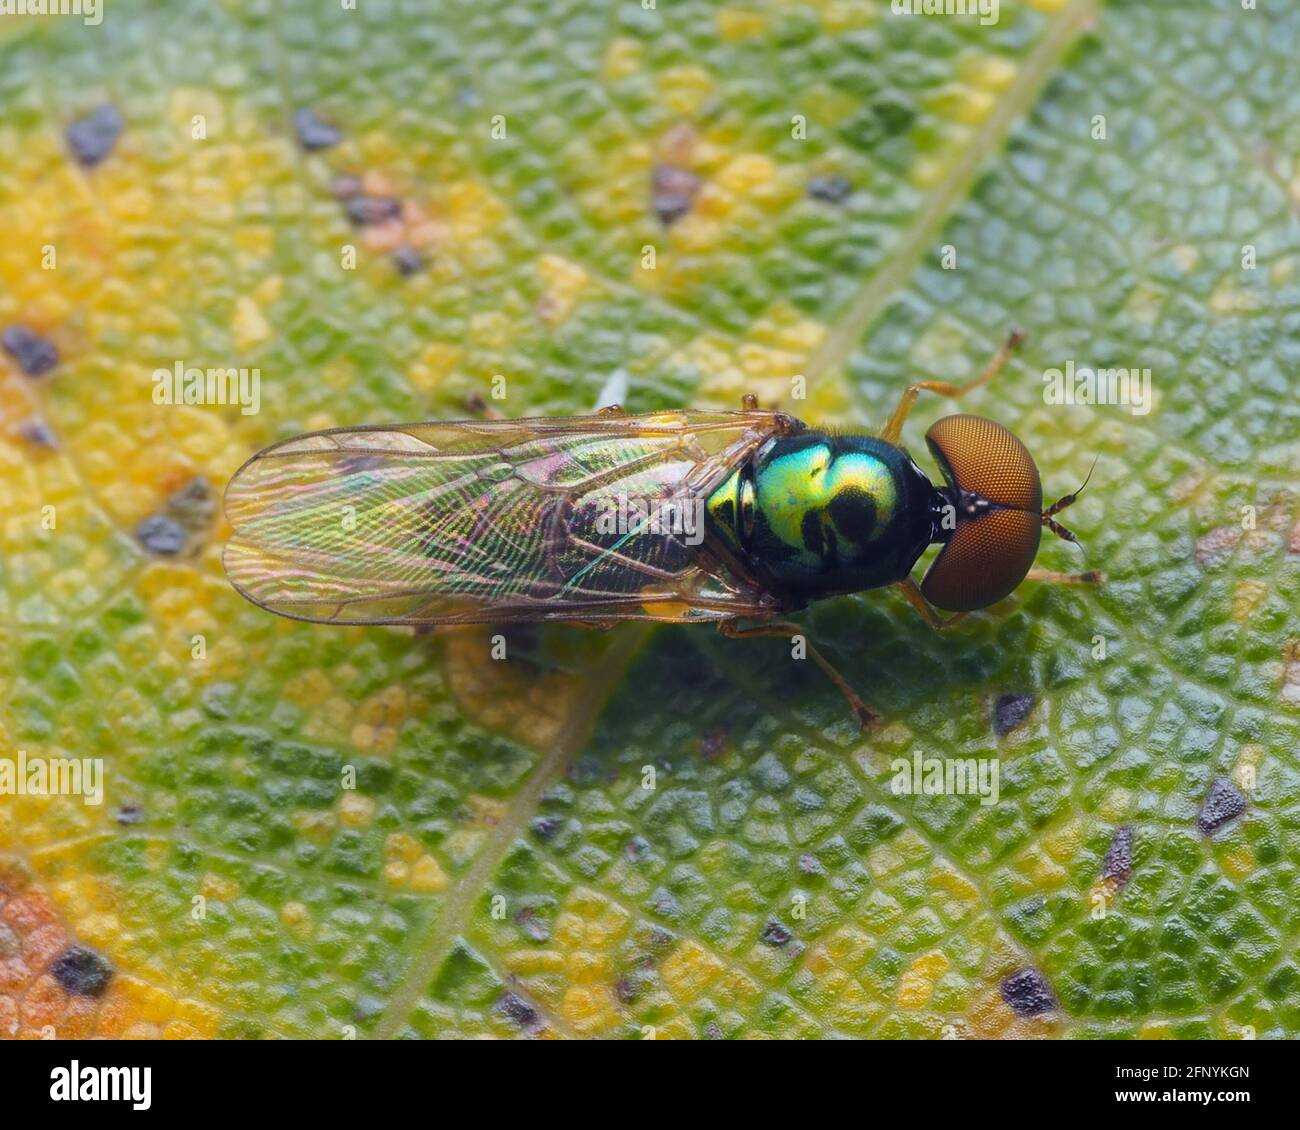 Dorsale Ansicht der Frontalansicht von Michrochysa flavicornis Soldierfly, die auf einem Eichenblatt ruht. Tipperary, Irland Stockfoto